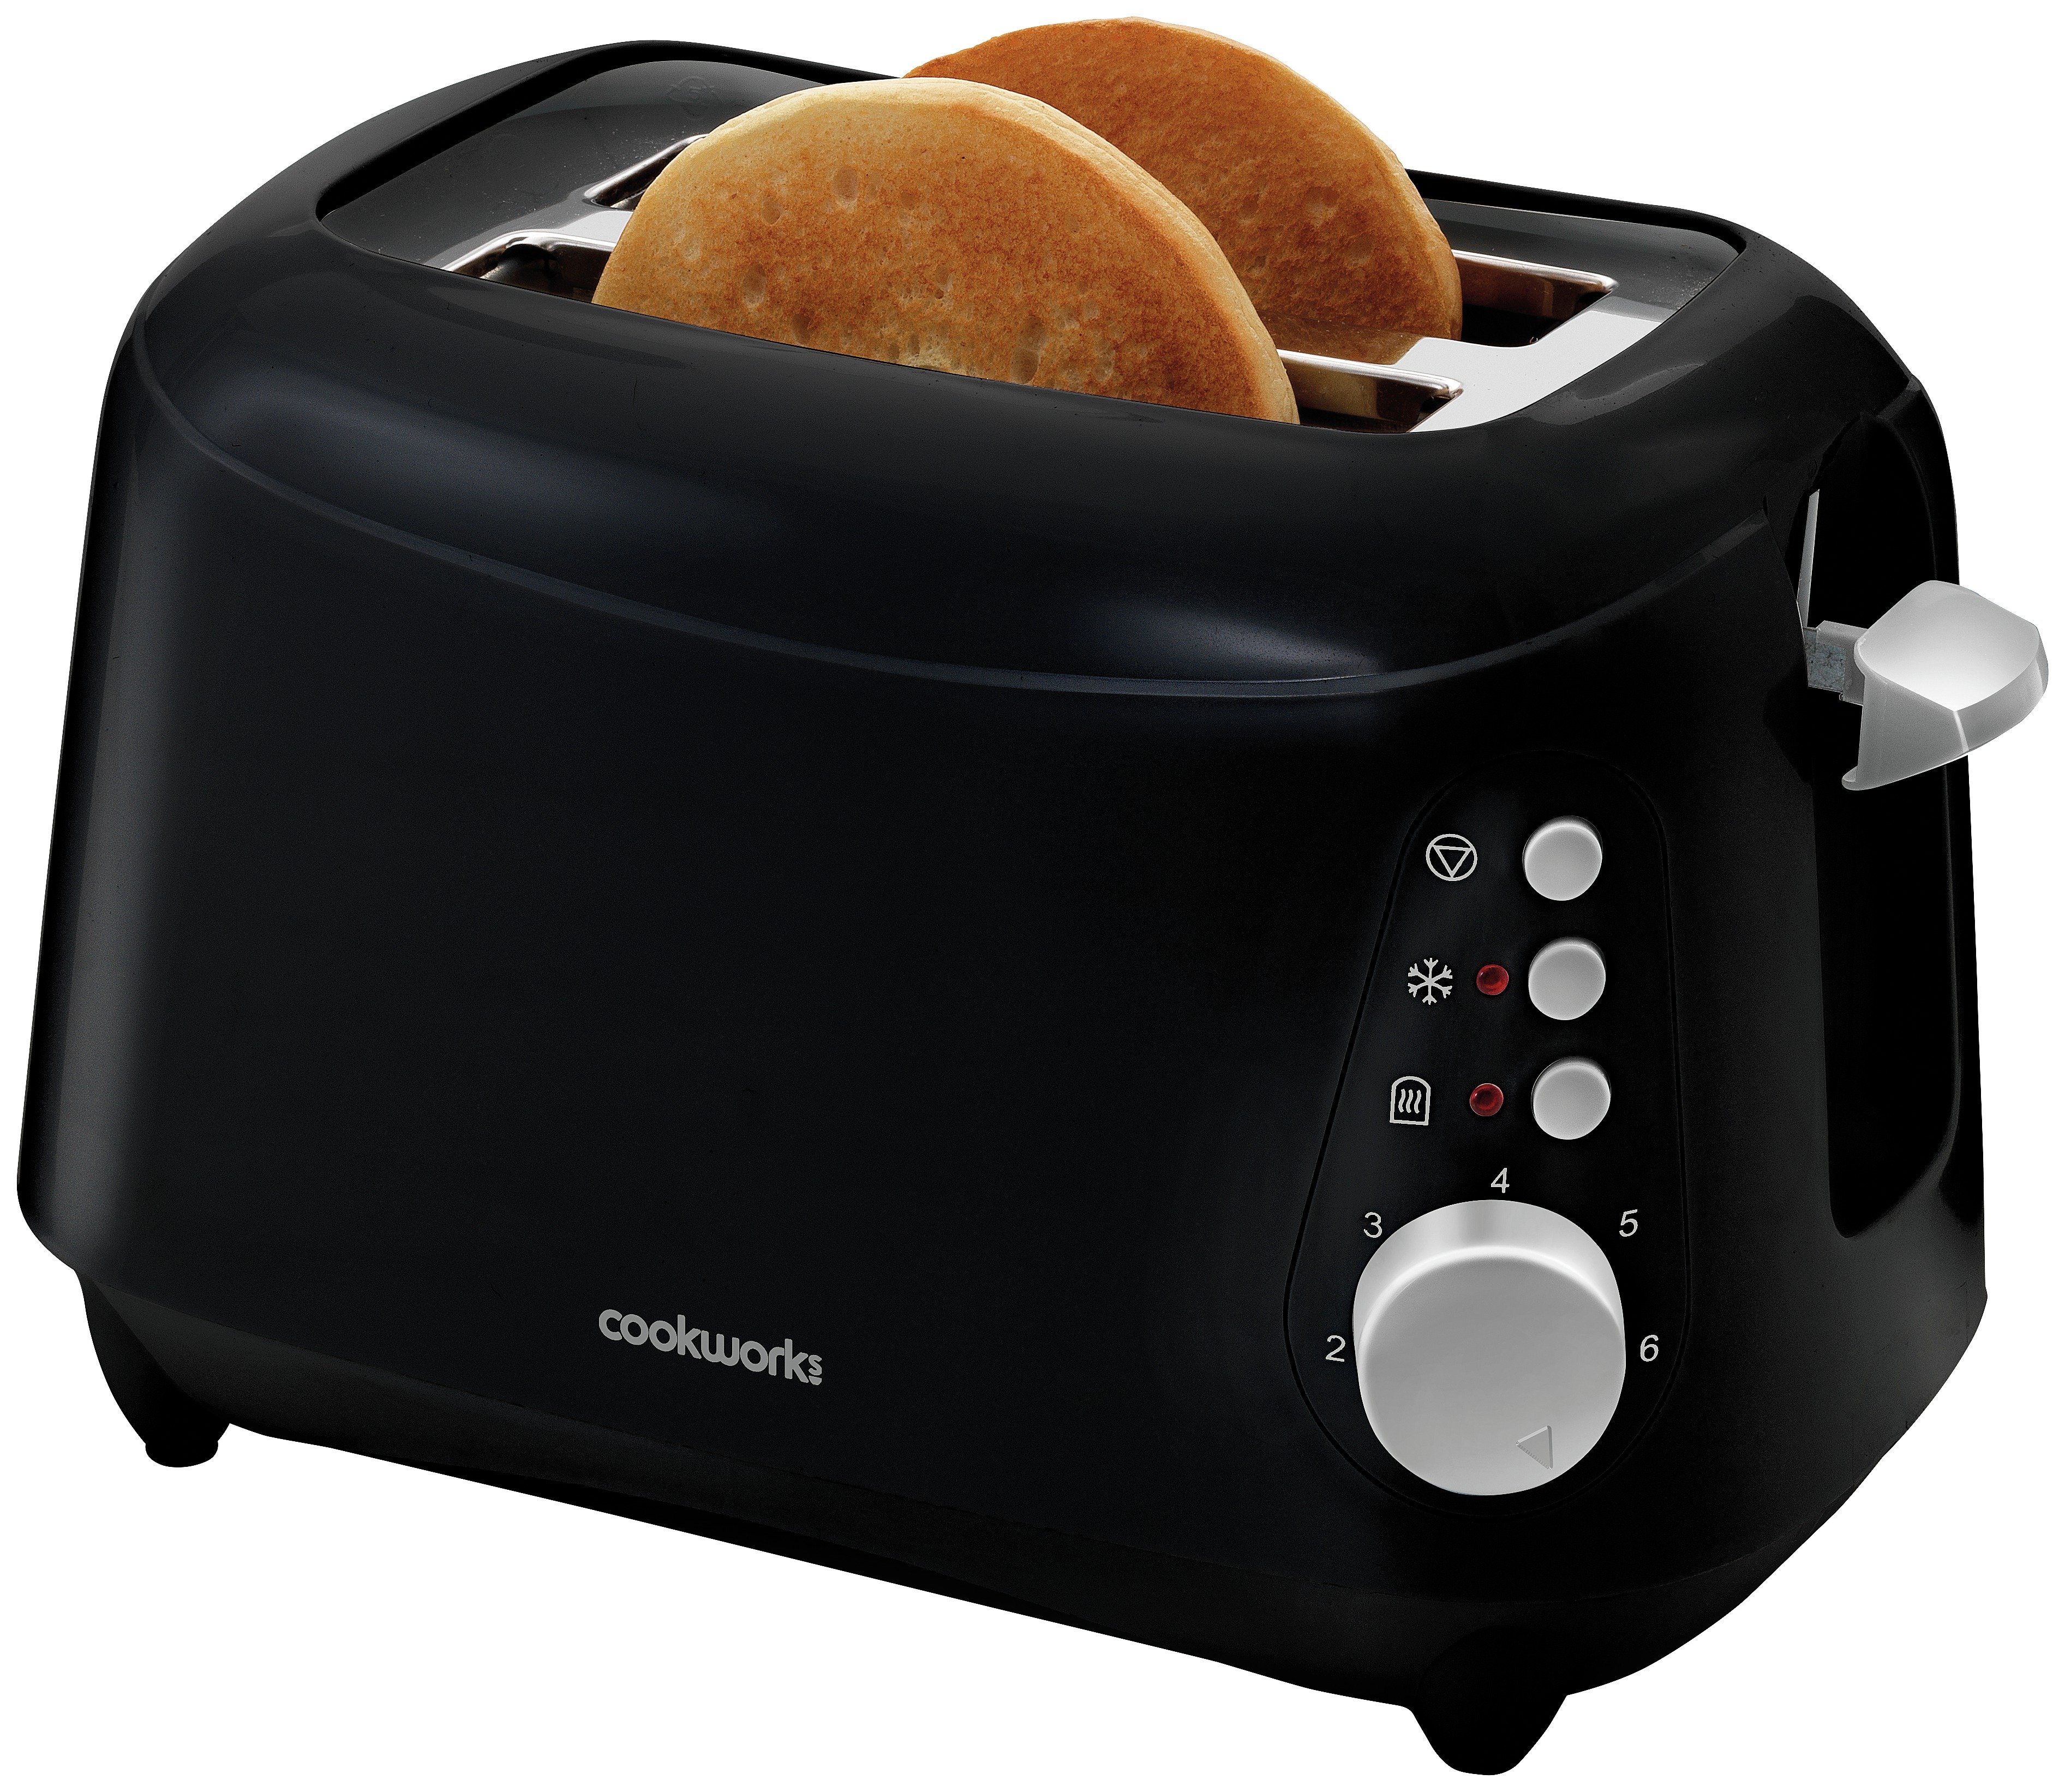 'Cookworks 2 Slice Toaster - Black